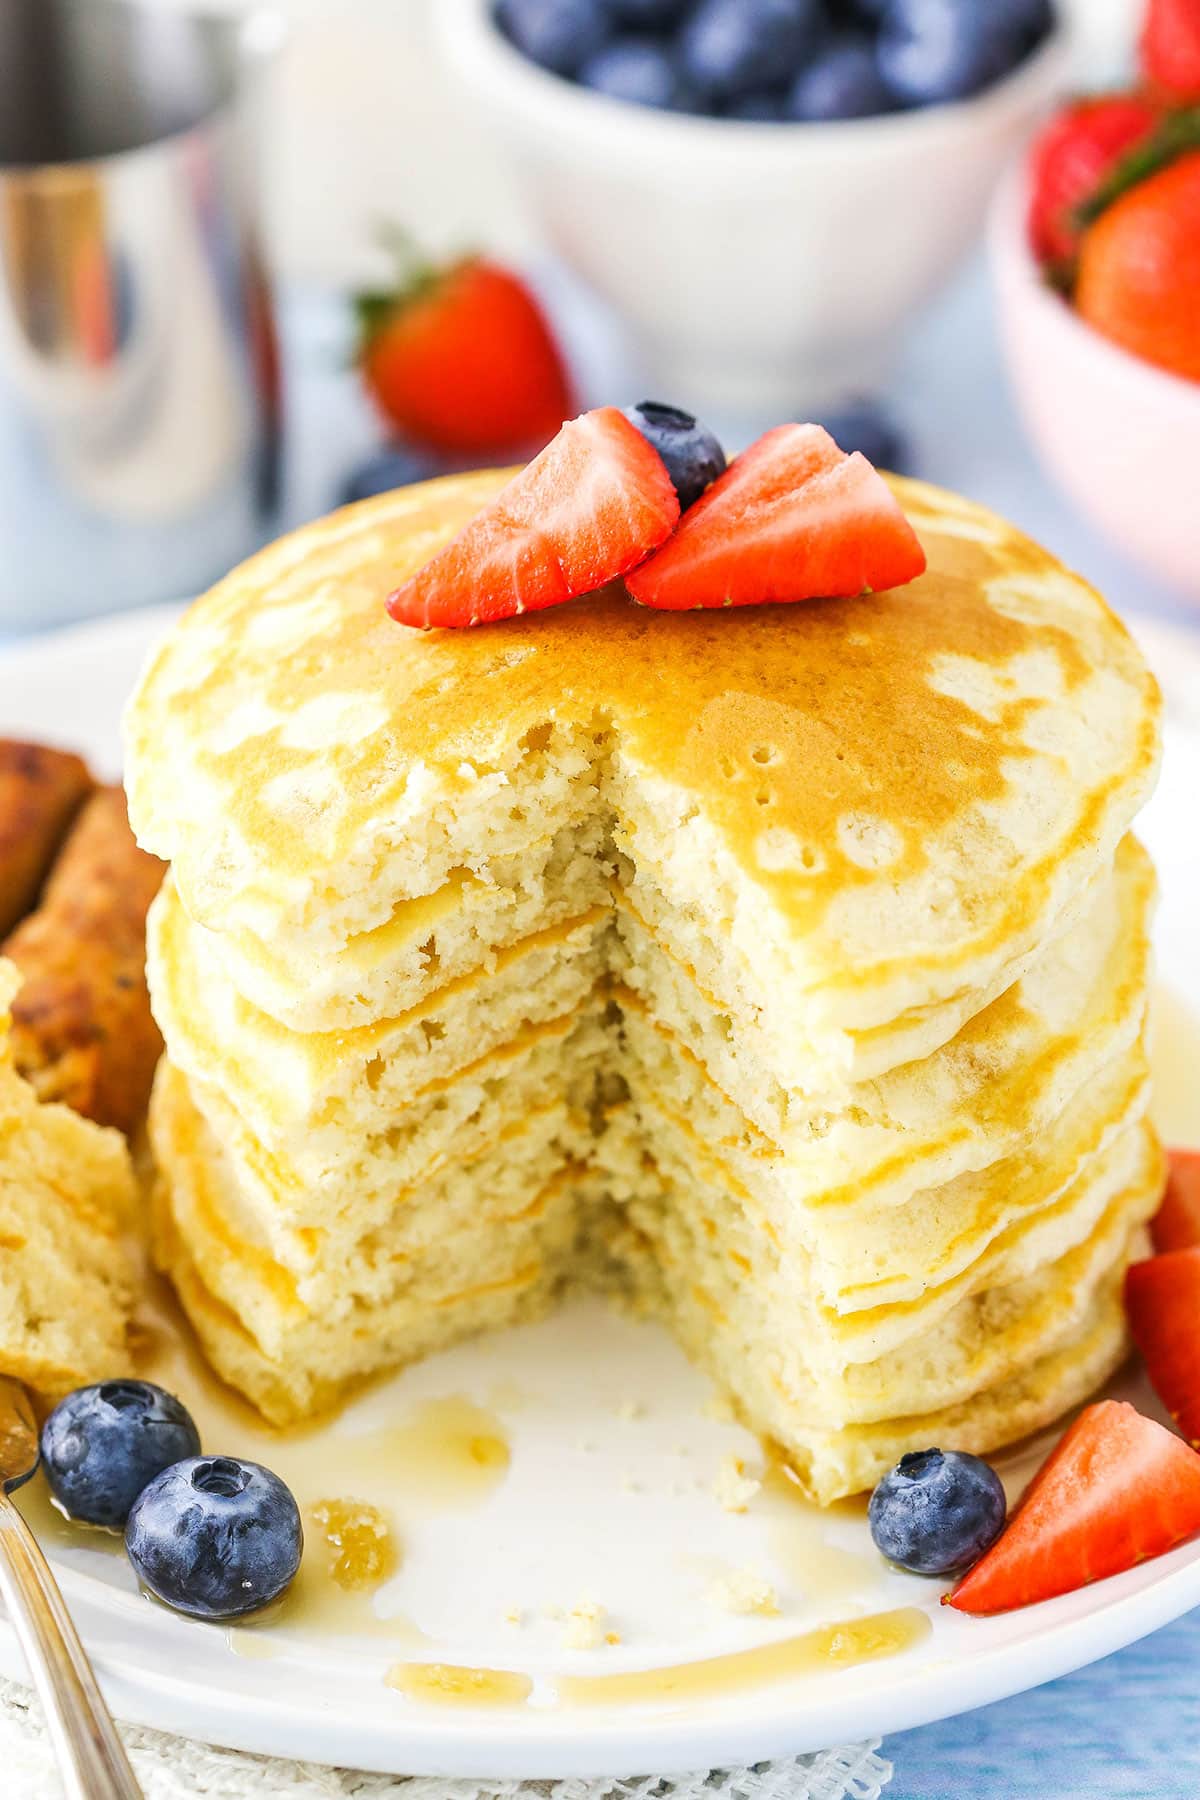 https://www.lifeloveandsugar.com/wp-content/uploads/2023/05/Fluffy-Homemade-Pancake-Recipe4E.jpg